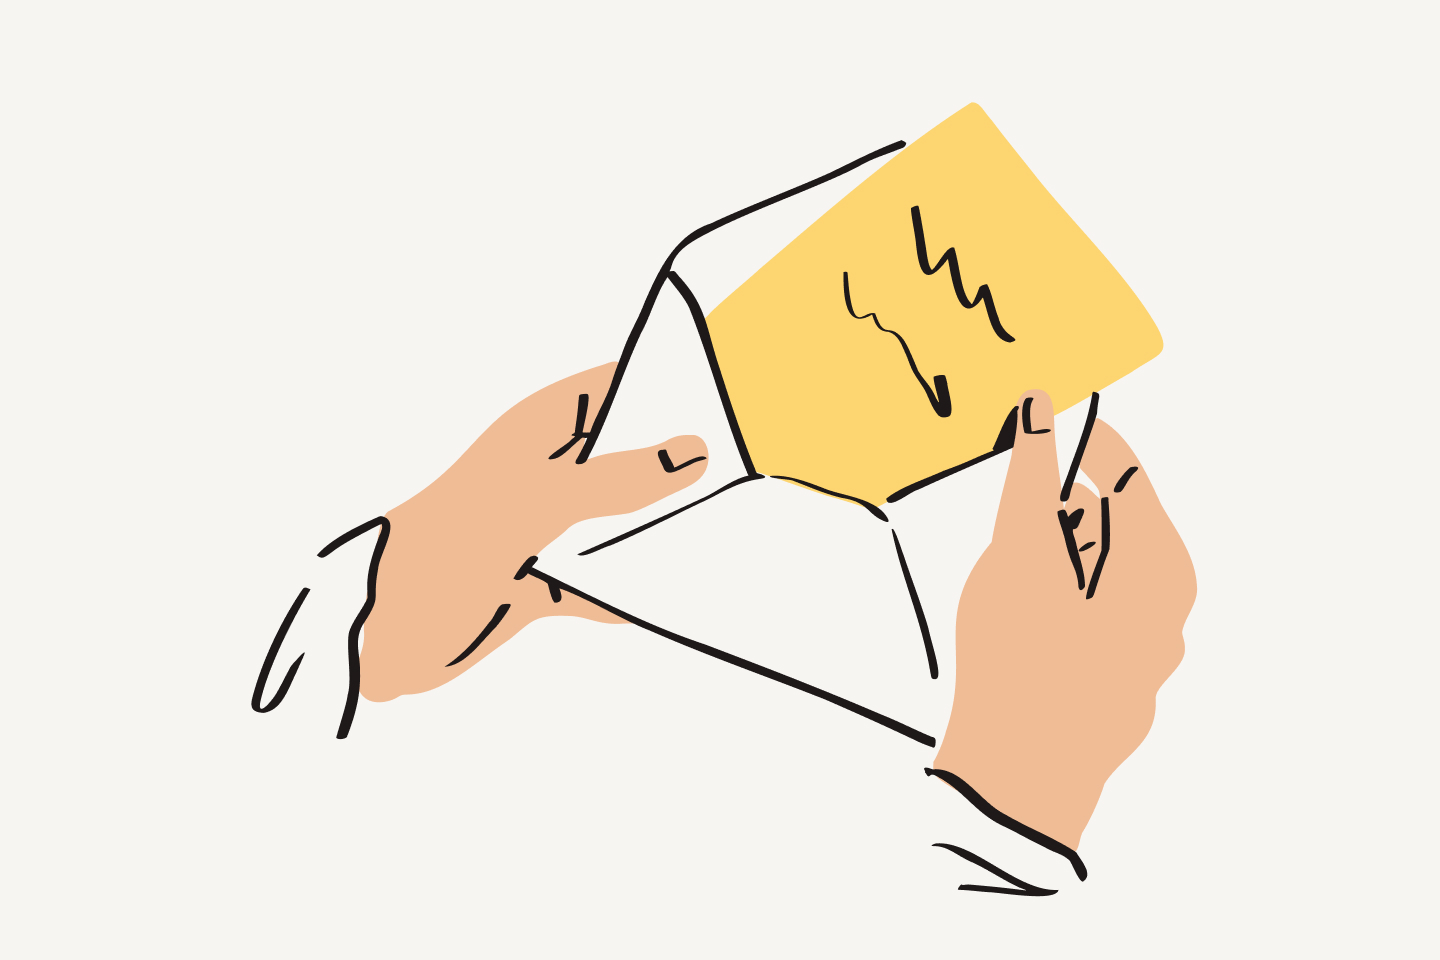 文字が書かれた黄色い紙を封筒から取り出している人物